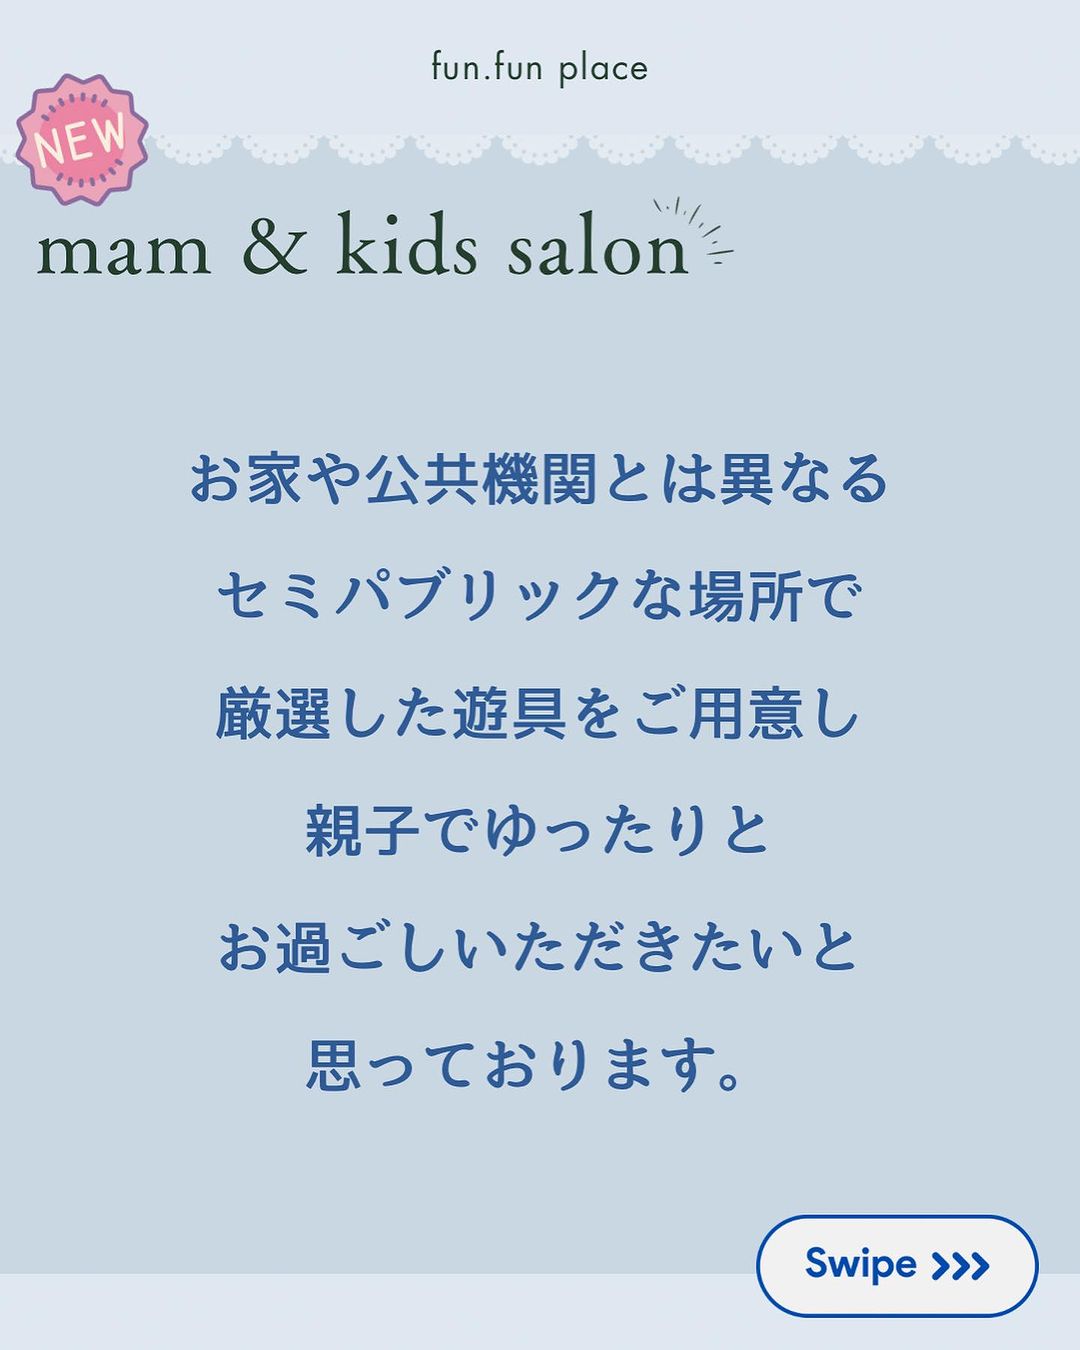 【12月スケジュール】man & kids salon